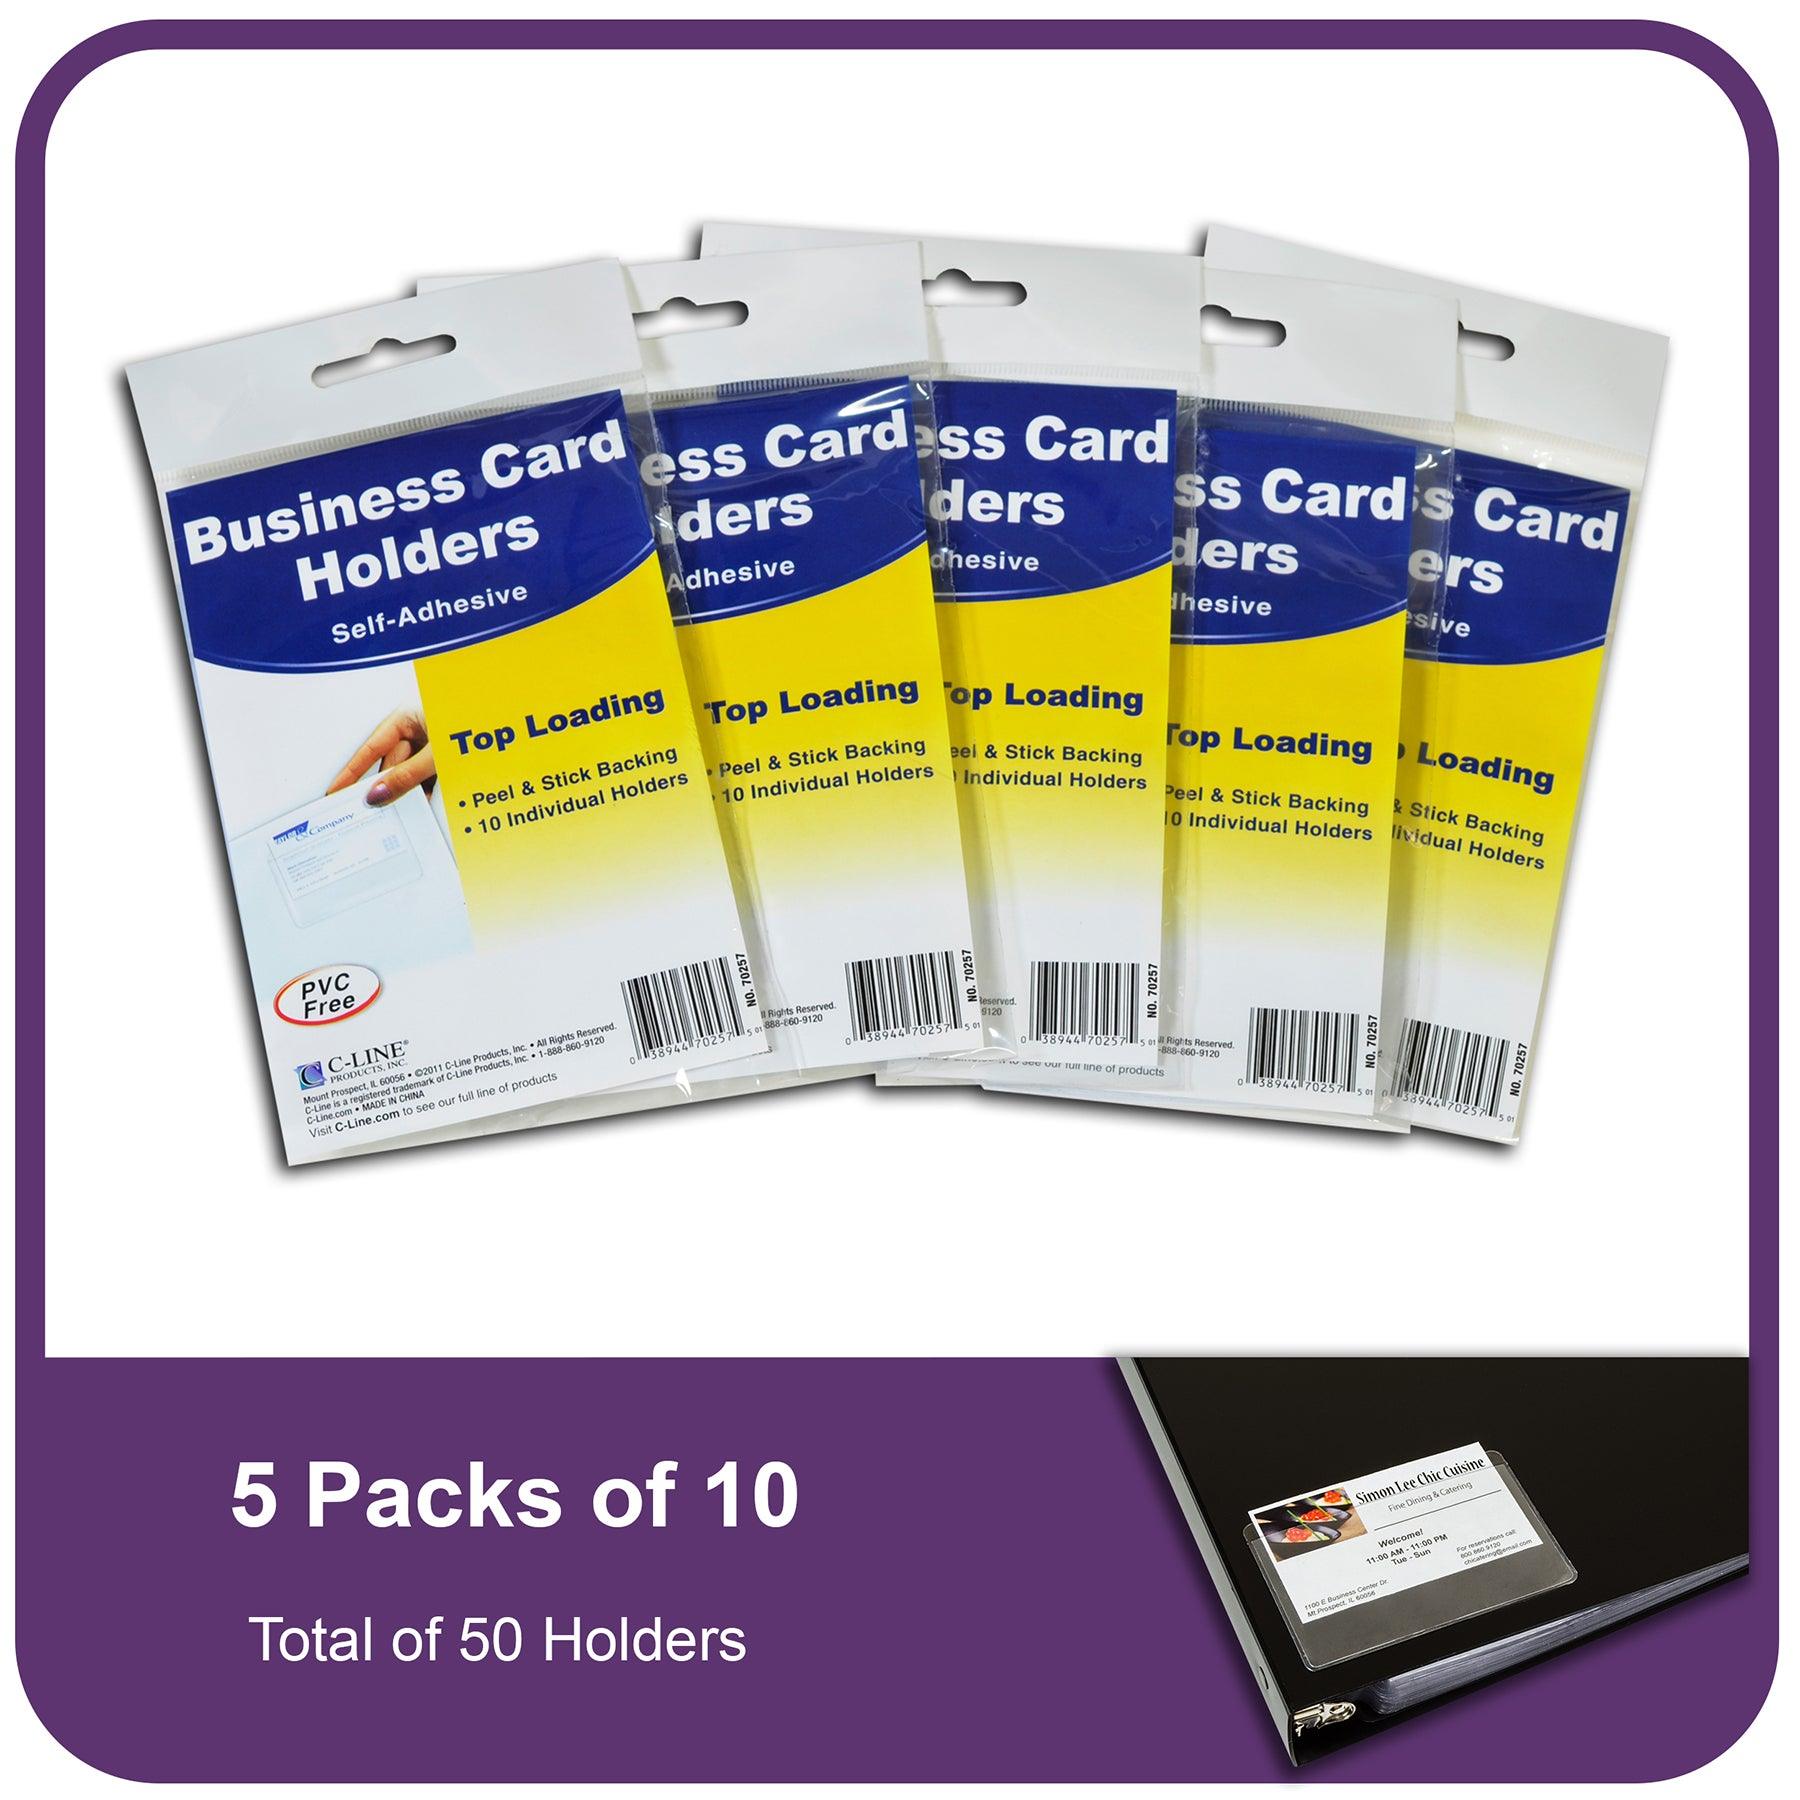 Self-Adhesive Business Card Holder, Top Load, 2" x 3-1/2", 10 Per Pack, 5 Packs - Loomini